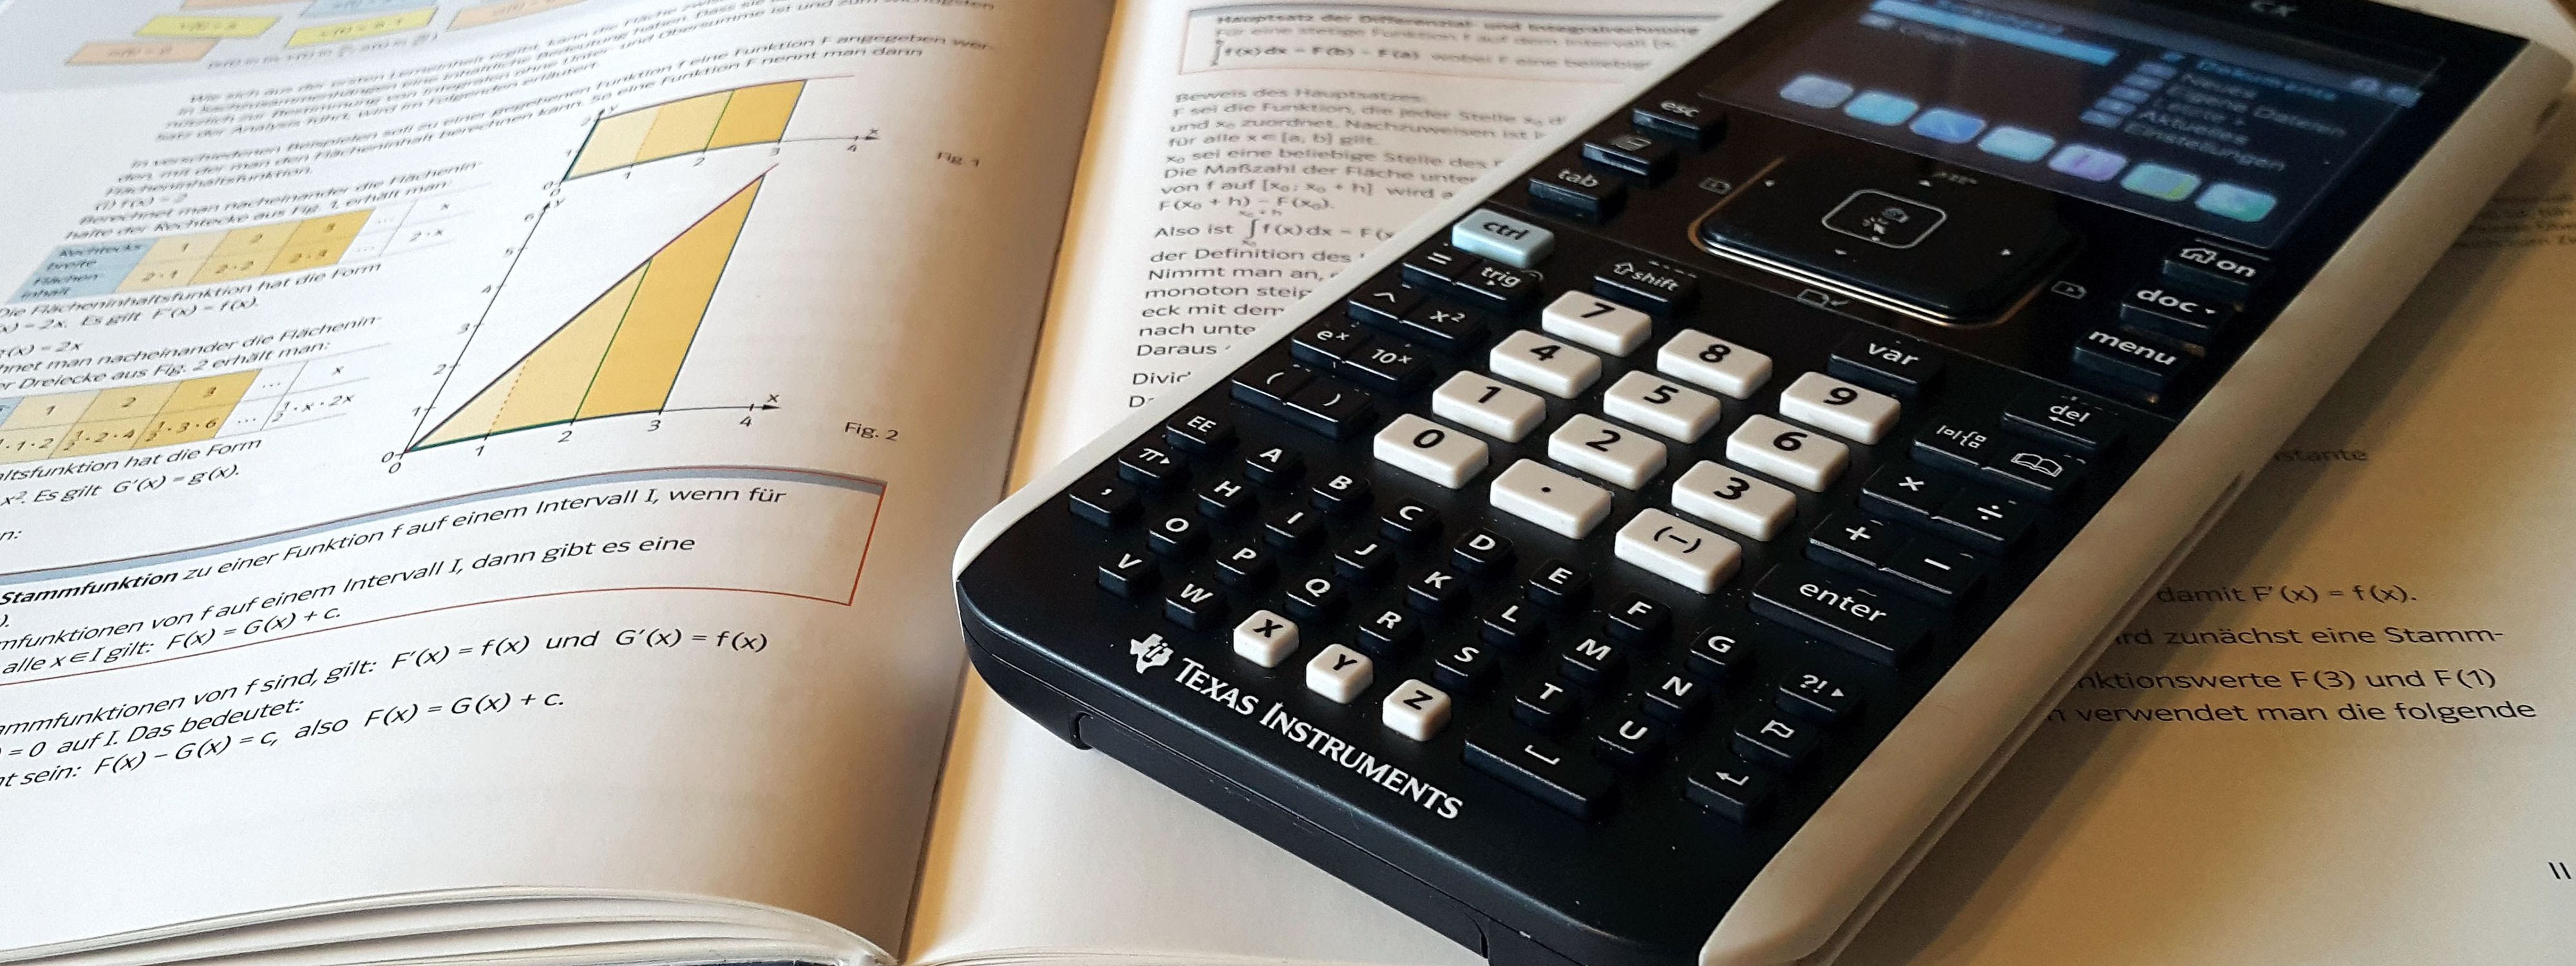 kalkulator og mattebok